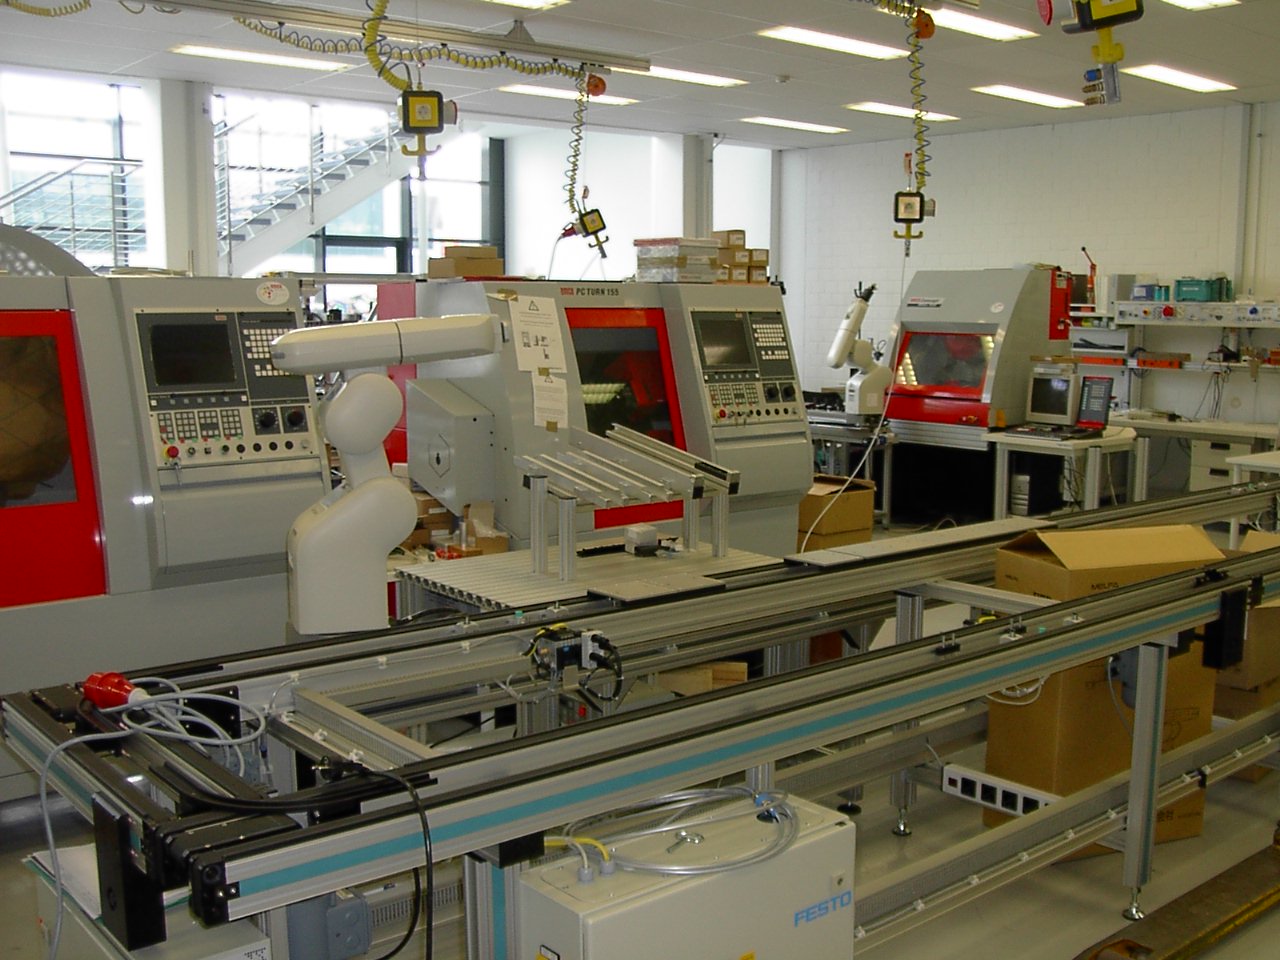 Emco Concept Mill 250: CNC-Drehmaschine für die Ausbildung
Automation